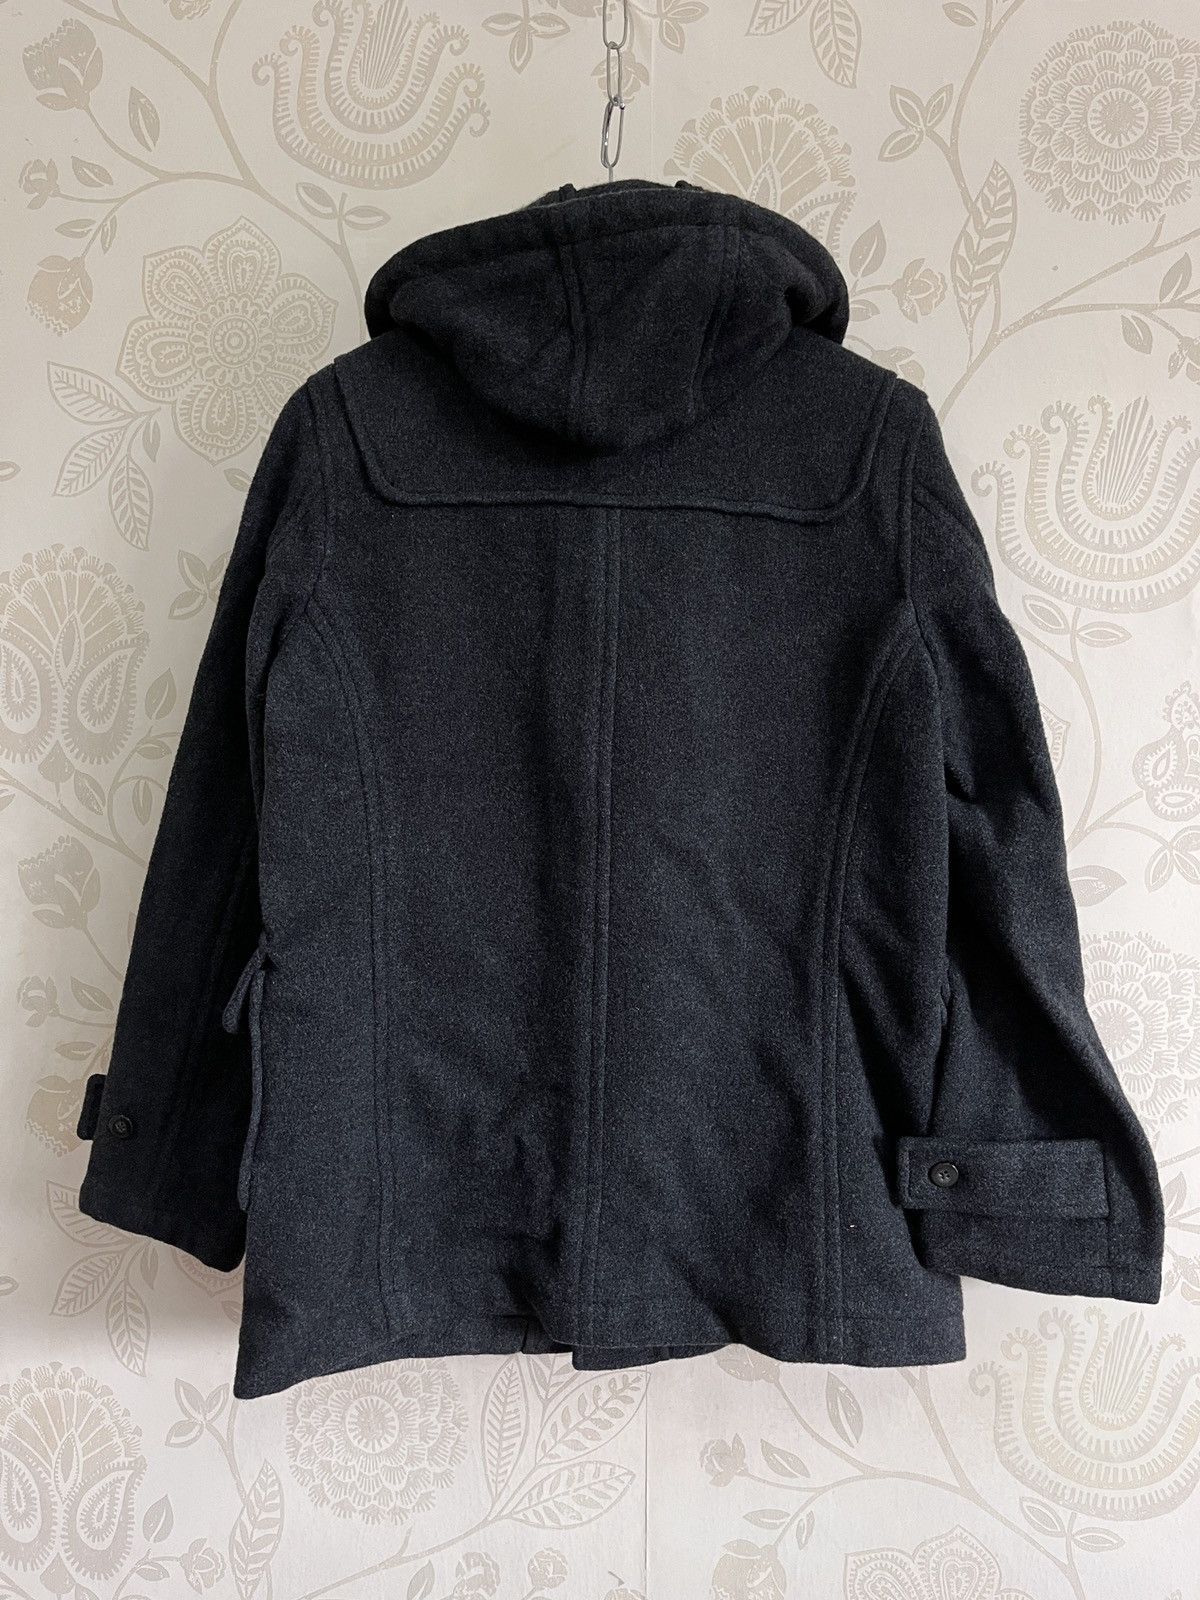 Beams Vintage 1980s Wool Hoodie Jacket Fine Clothing Japan - 13